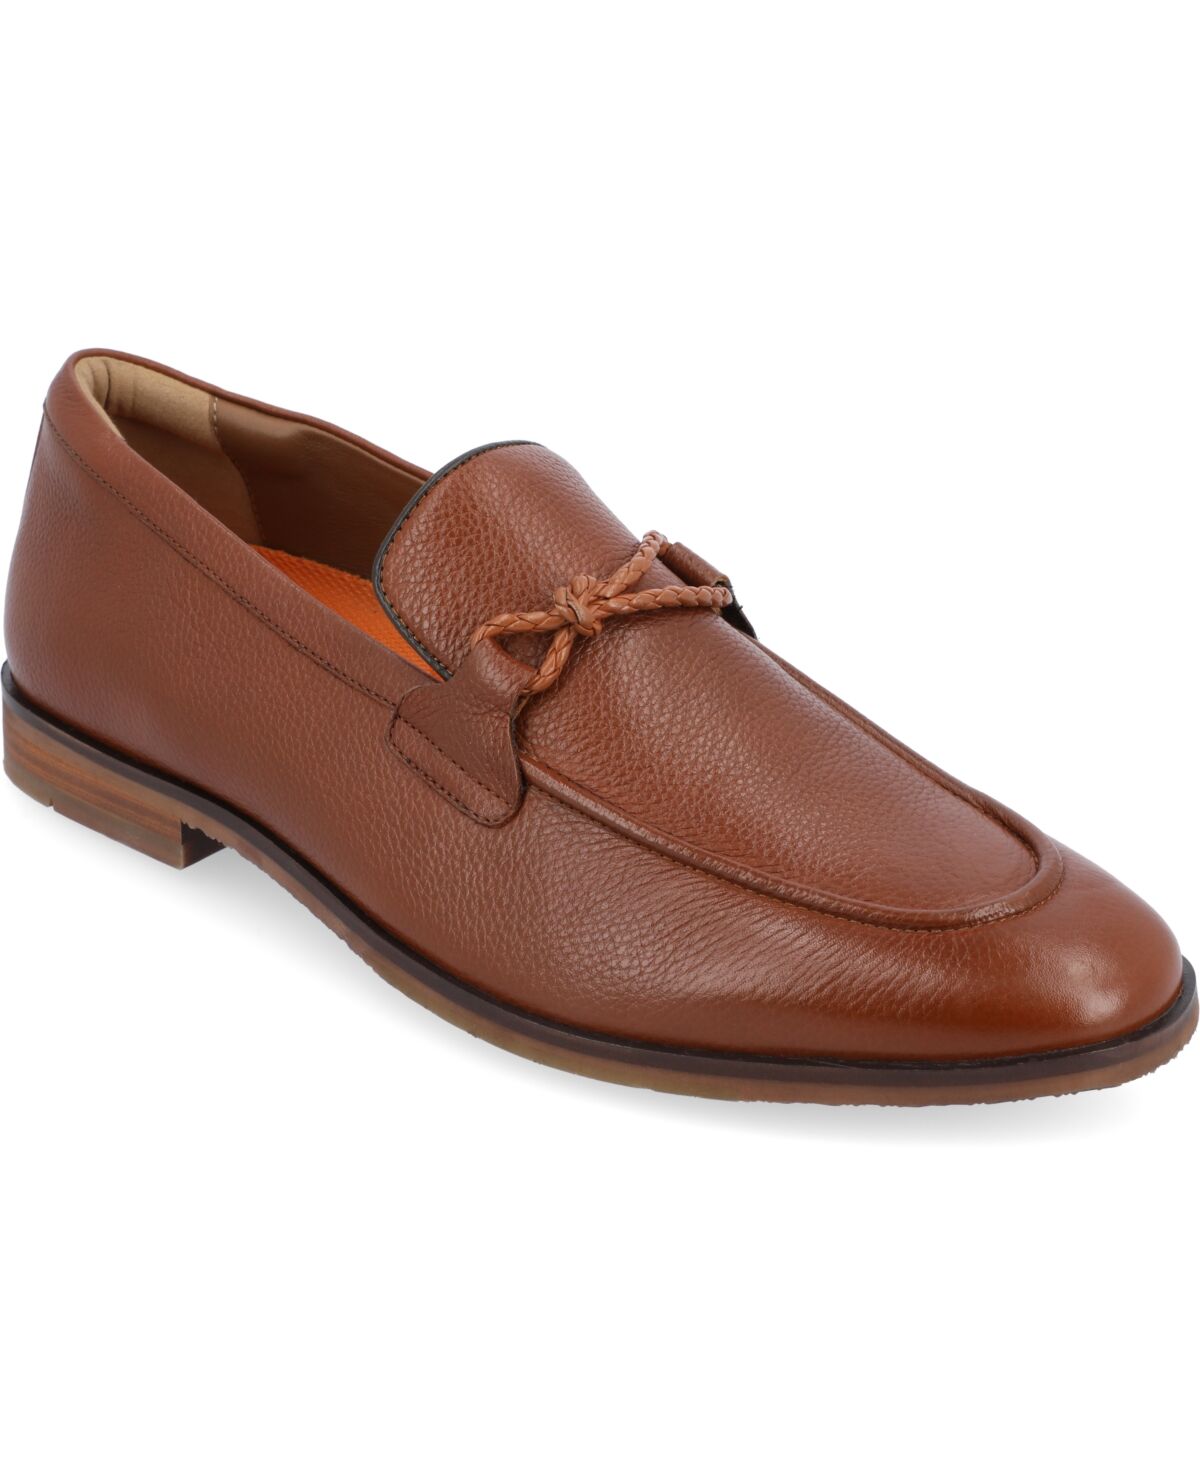 Thomas & Vine Men's Finegan Apron Toe Loafer Dress Shoes - Cognac